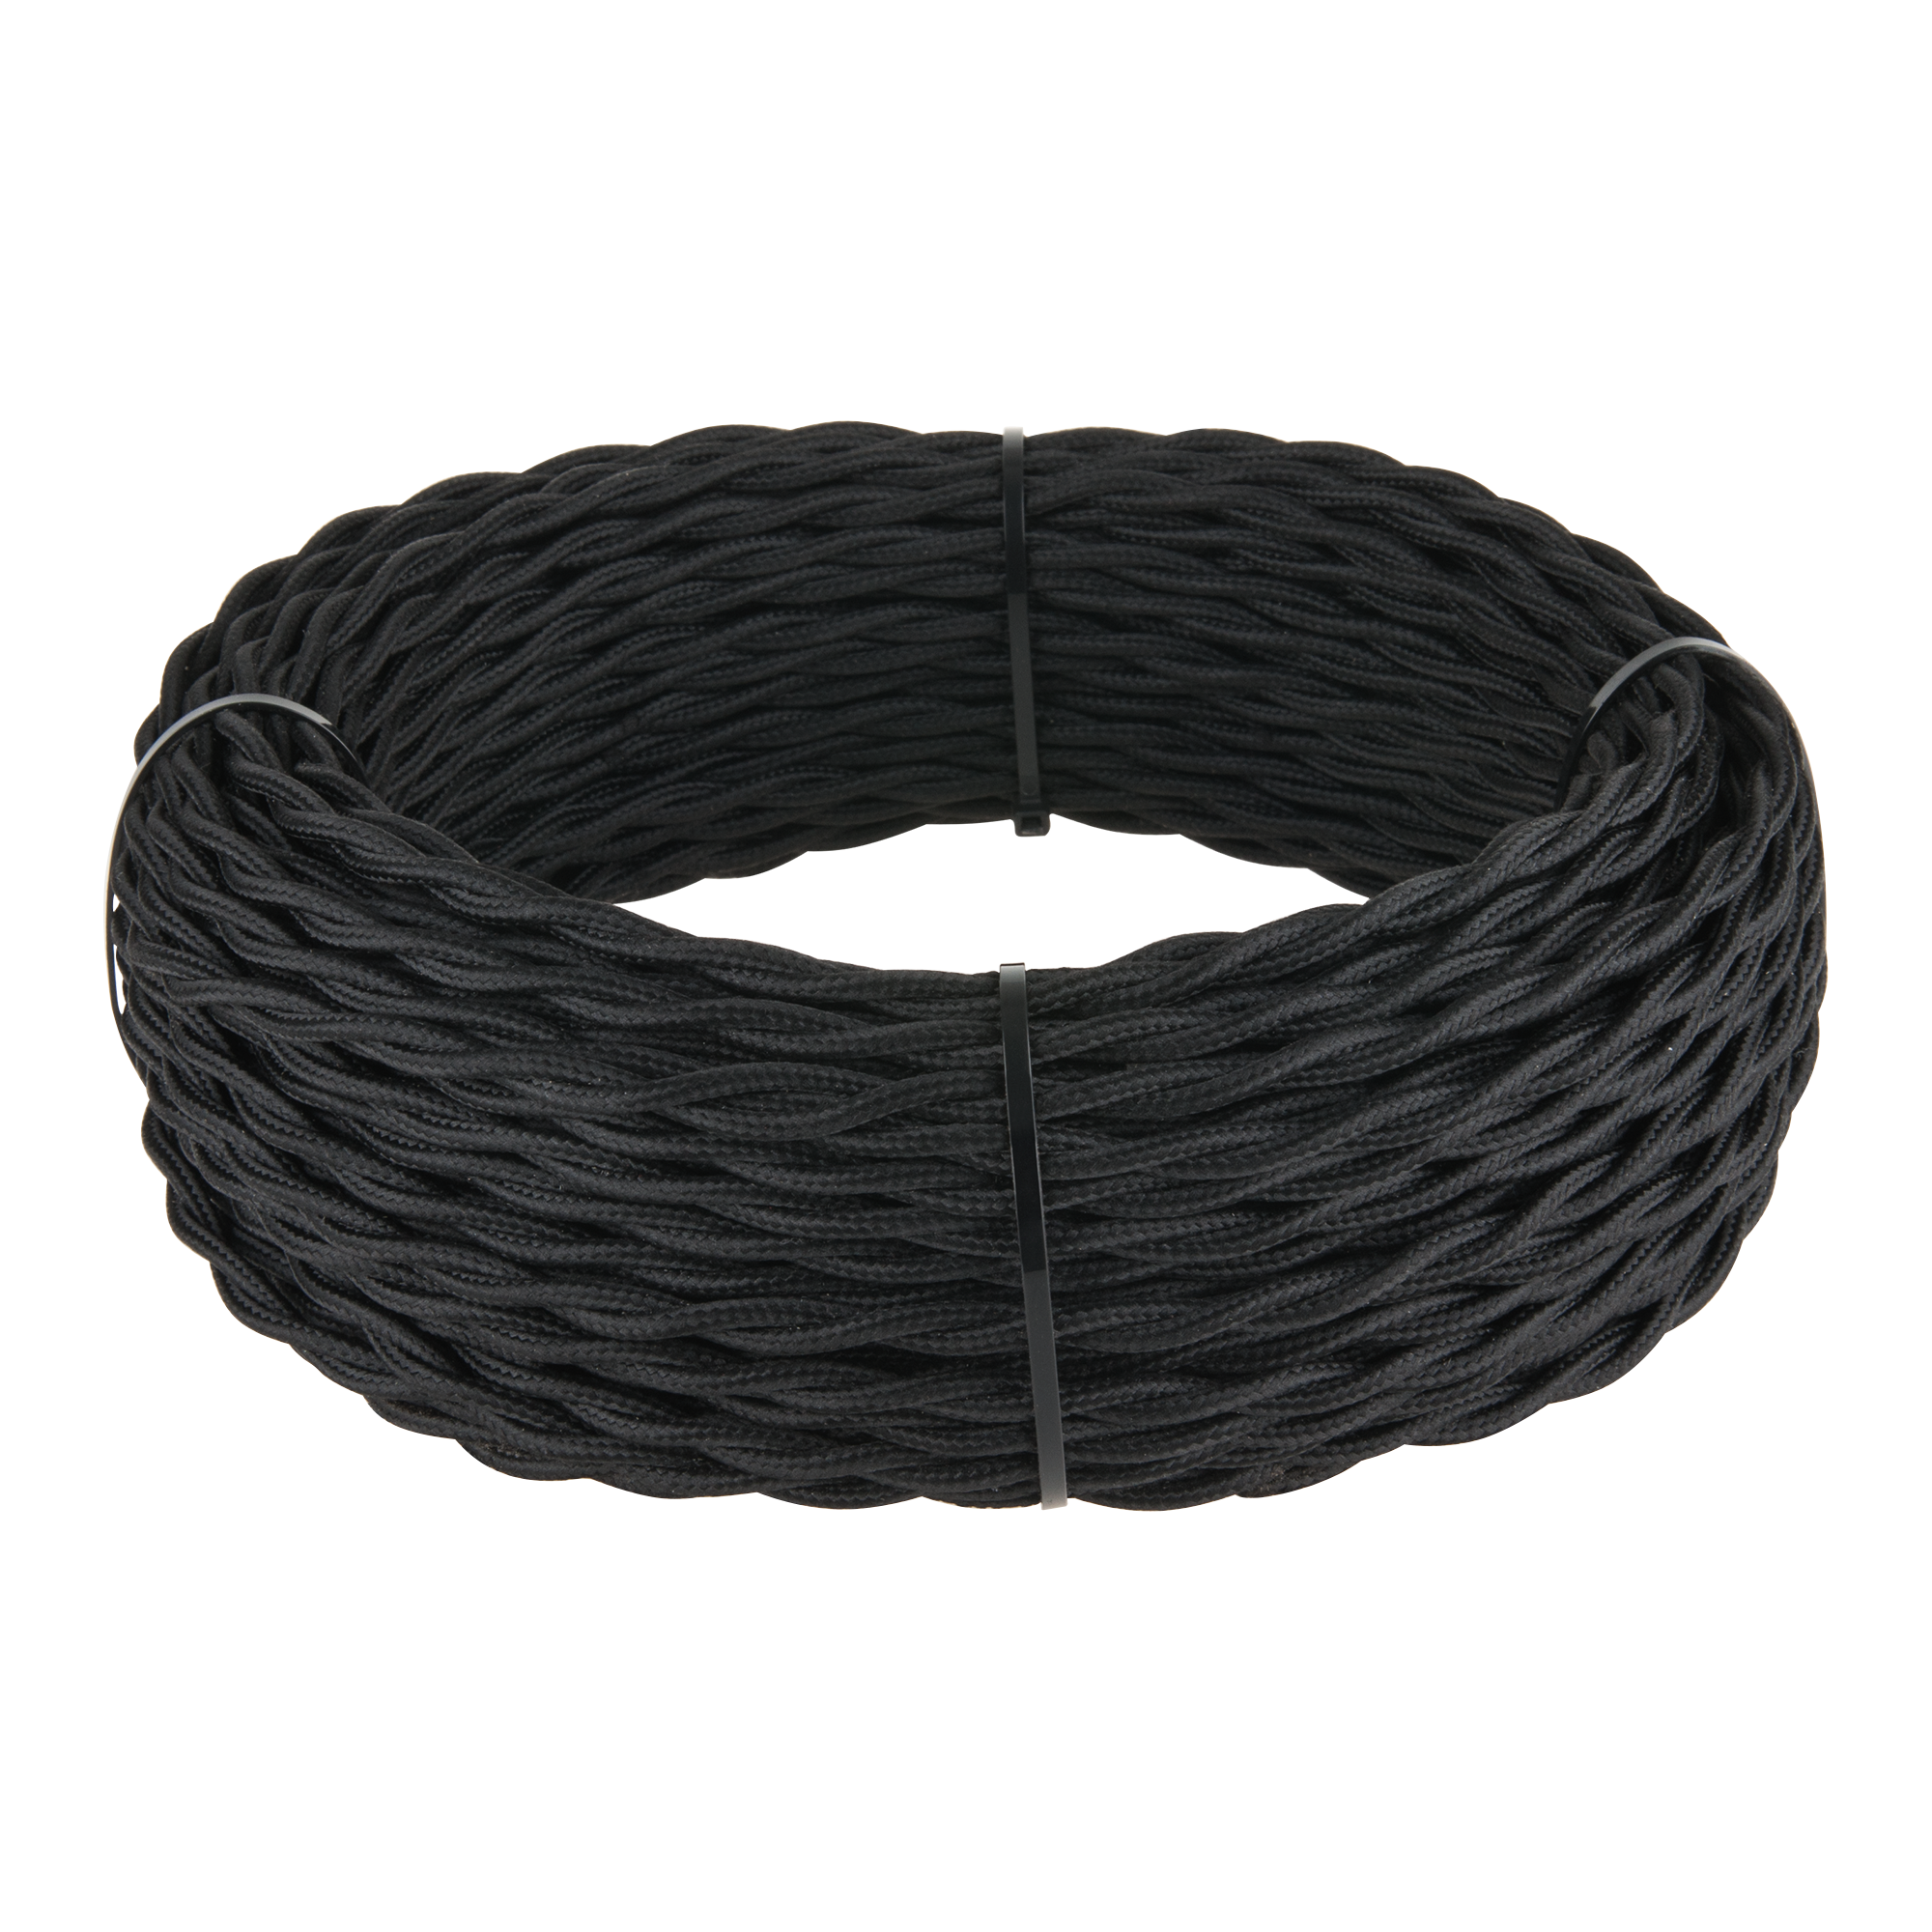 Ретро кабель Werkel Ретро кабель черный W6452508/ Ретро кабель витой 2